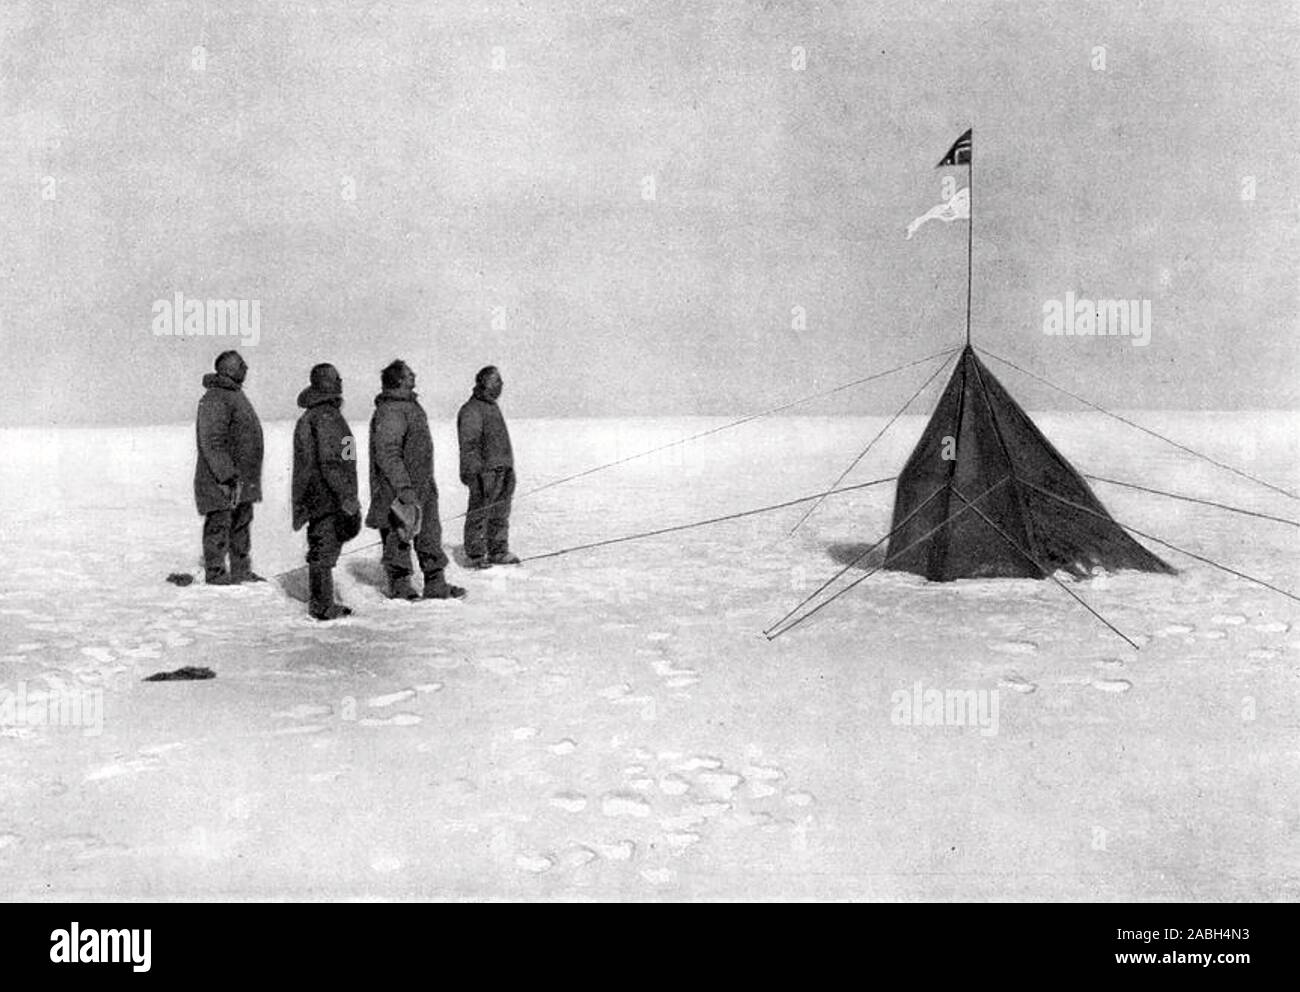 ROALD AMUNDSEN (1872-1928), norwegischer Polarforscher am 'Polheim" das Zelt errichtet am Südpol am 16. Dezember 1911. Von links: Amundsen, Helmer Hanssen, Sverre Hassel, Oscar Wistling. Die norwegische Flagge fliesd über ihr Schiff Fram Stockfoto